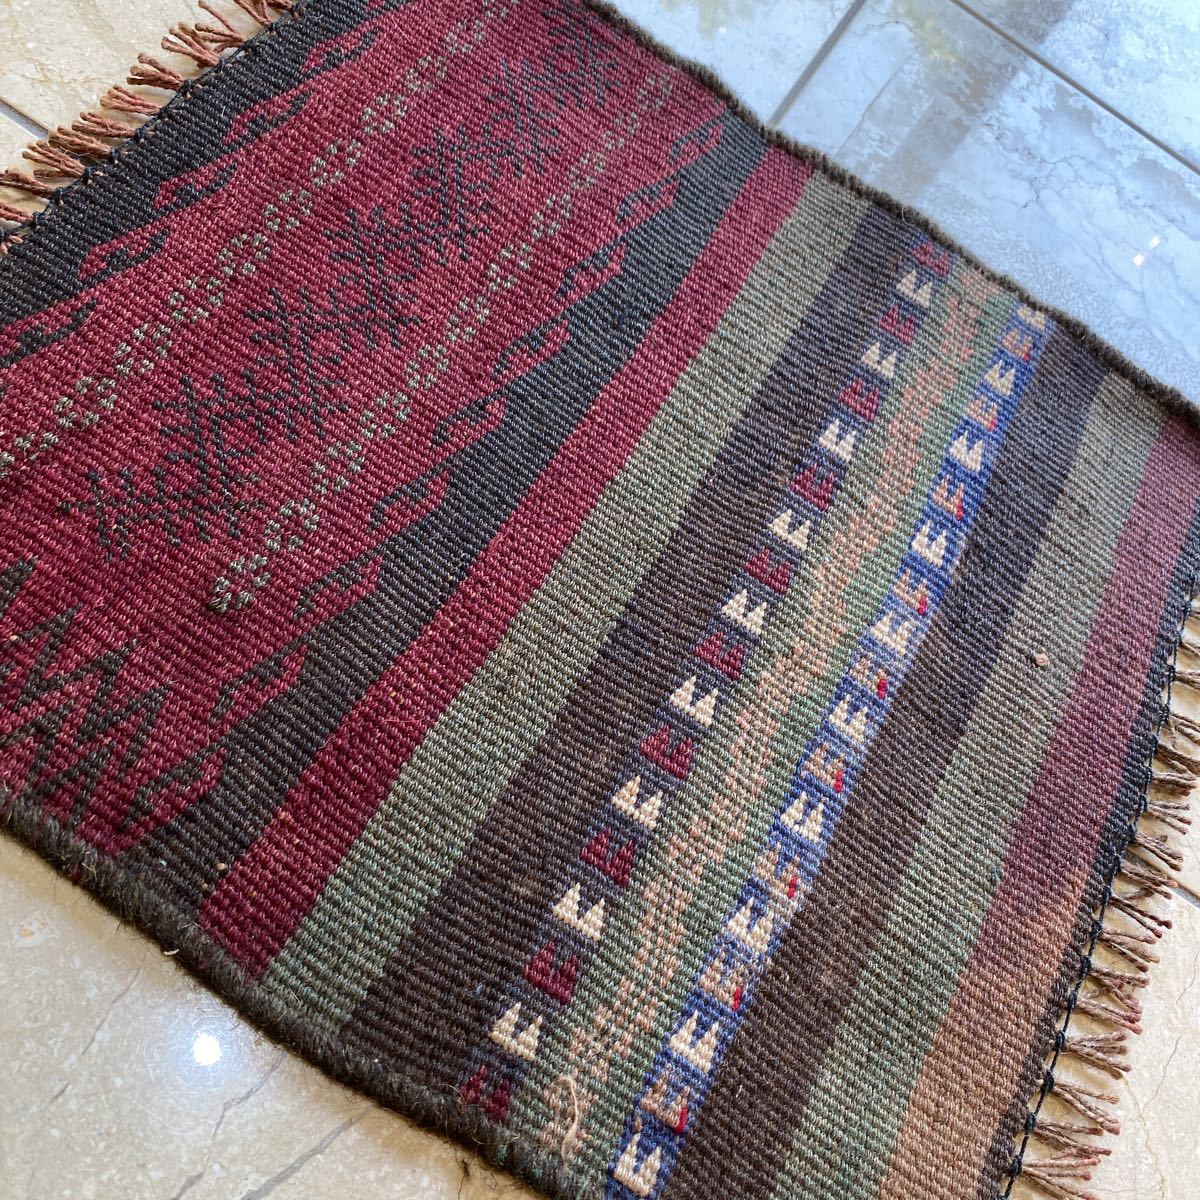 アフガニスタン マシュワニキリム 手織り絨毯 size:115㎝ × 76cm-